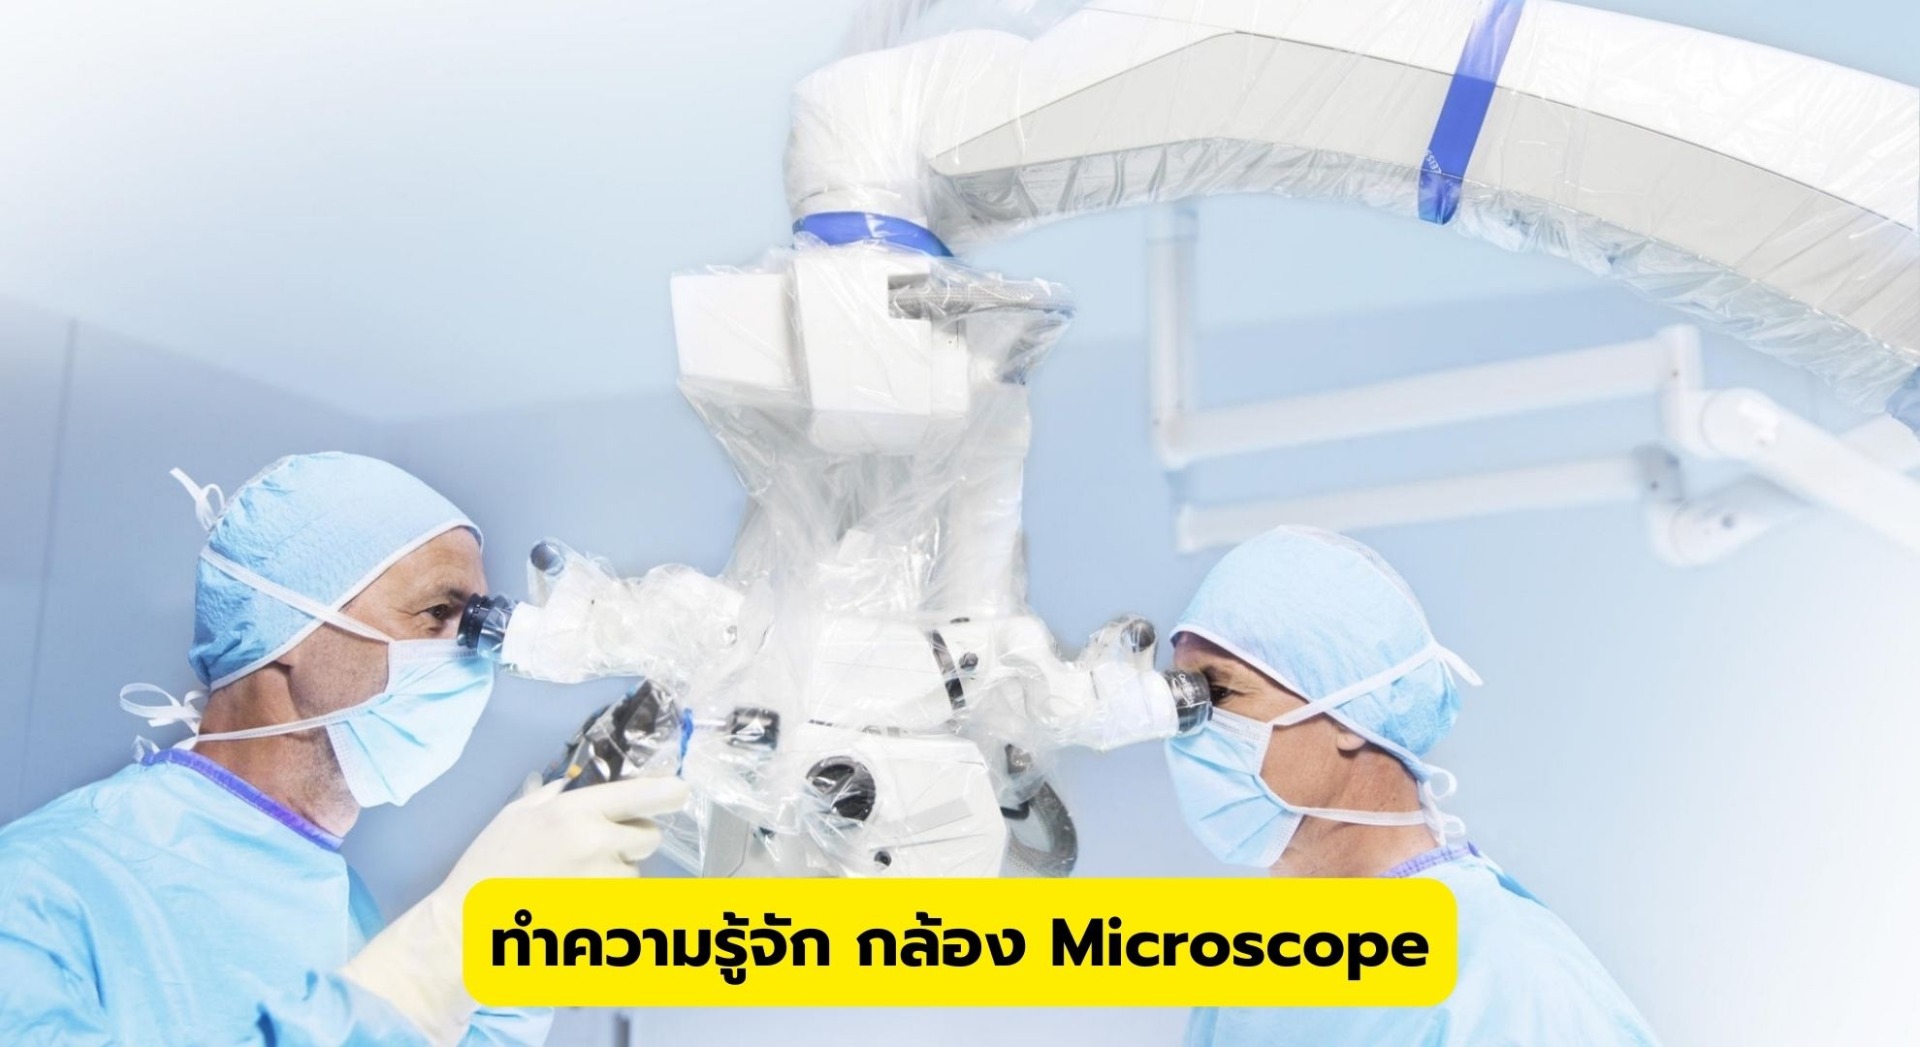 ทำความรู้จัก กล้อง Microscope